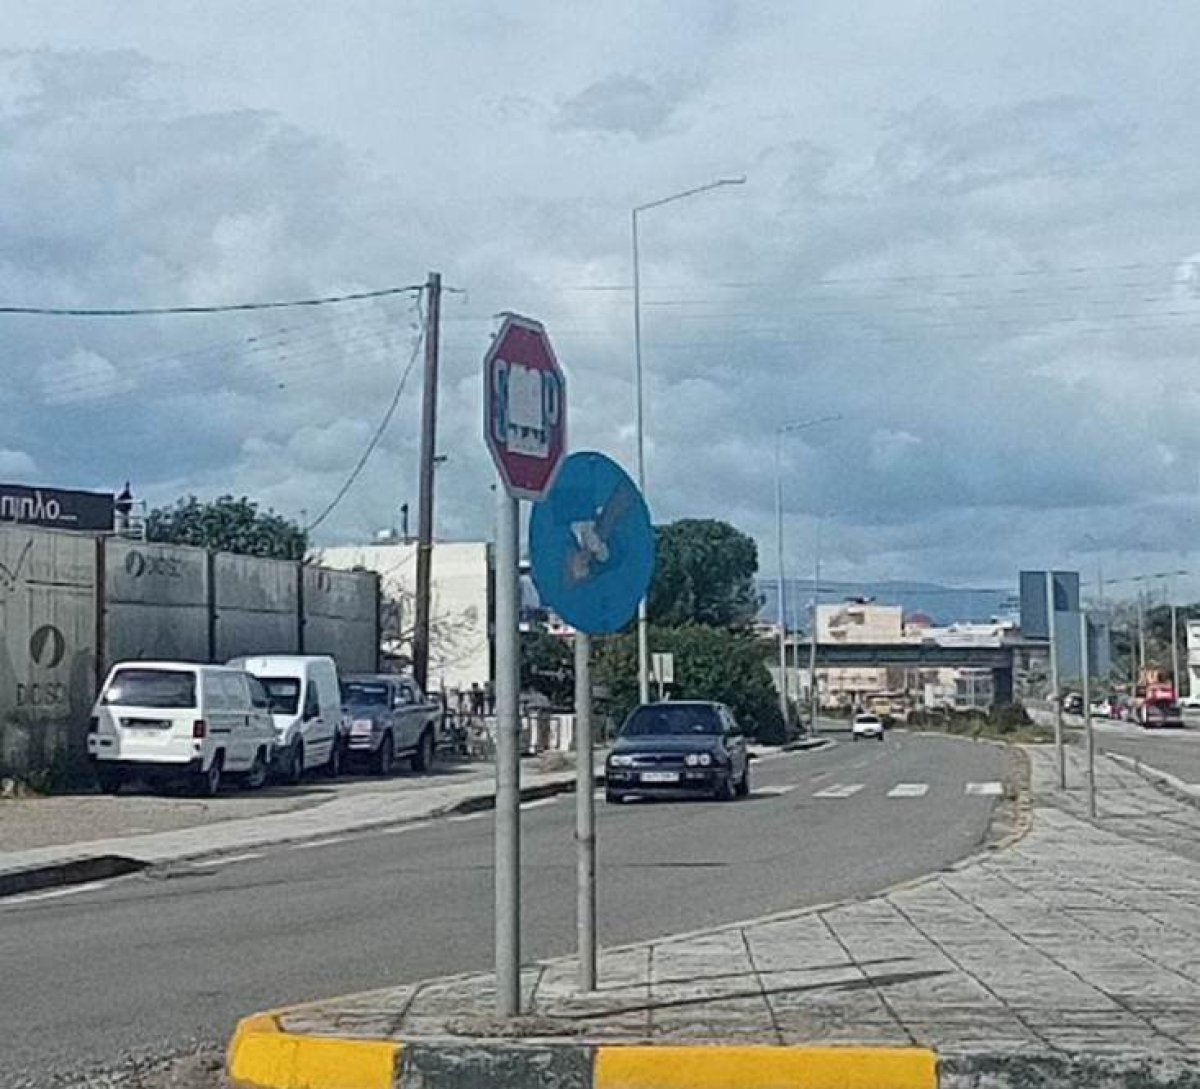 Οι σβησμένες πινακίδες: Κώδικας Οδικής Κυκλοφορίας Αιτωλοακαρνανίας, άλλως κώδικας πολιτιστικός…